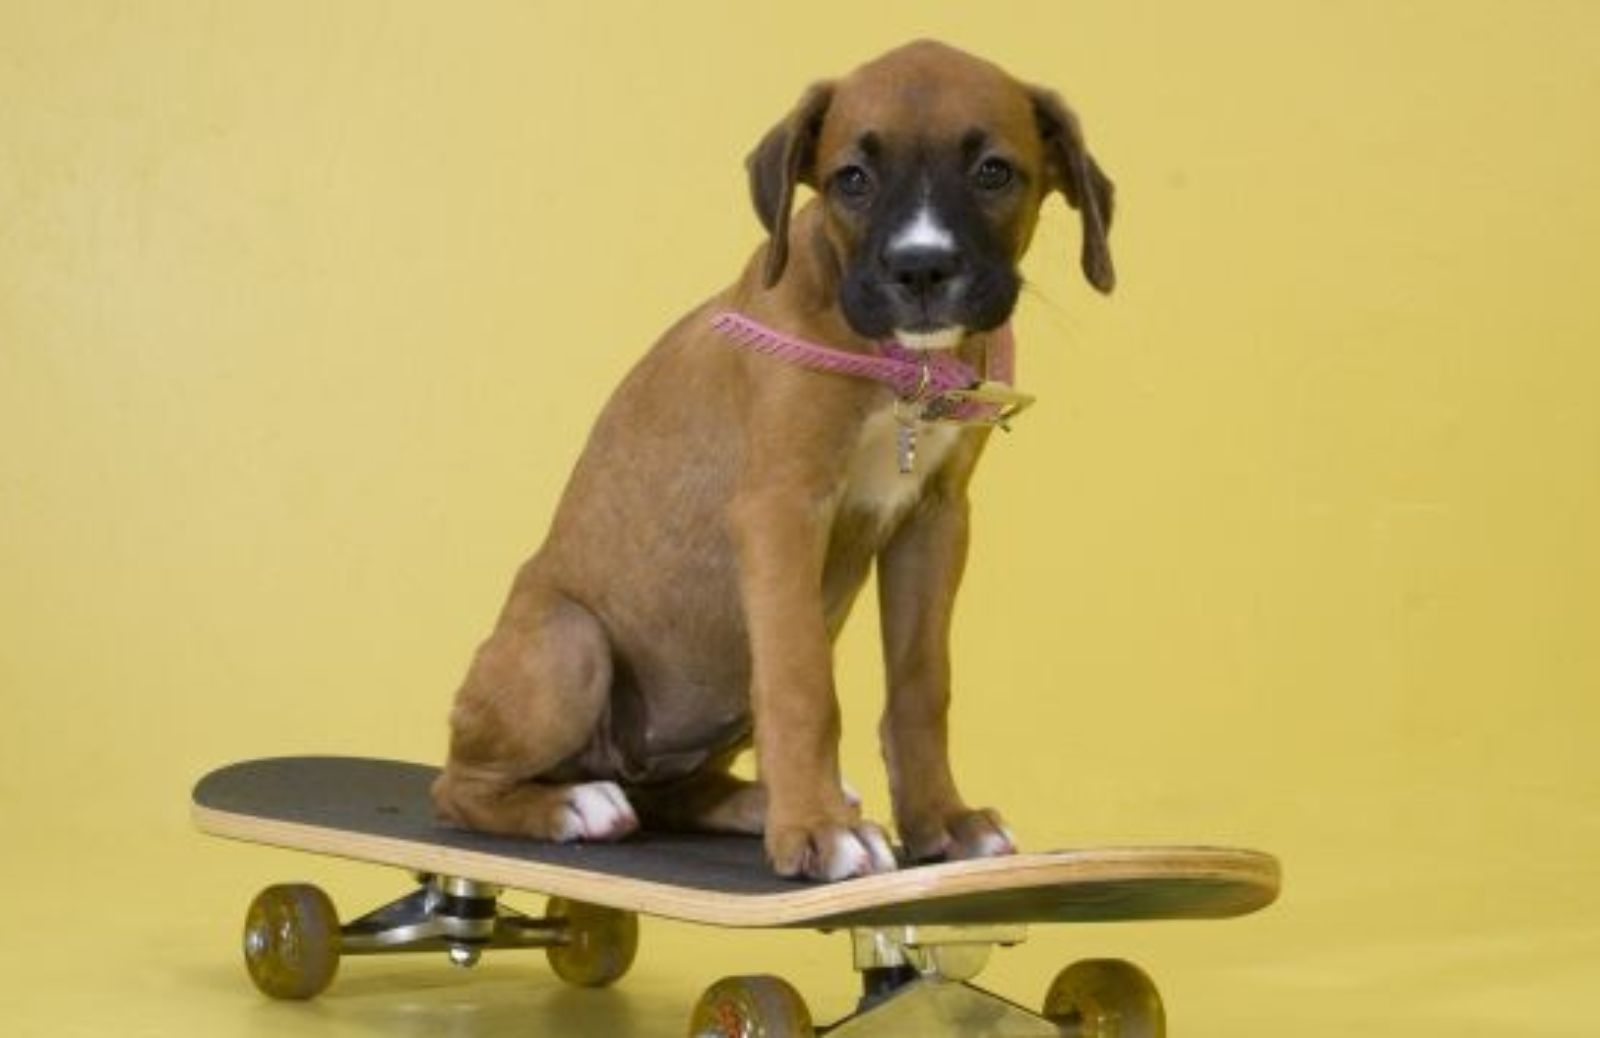 Come insegnare al cane ad andare sullo skateboard